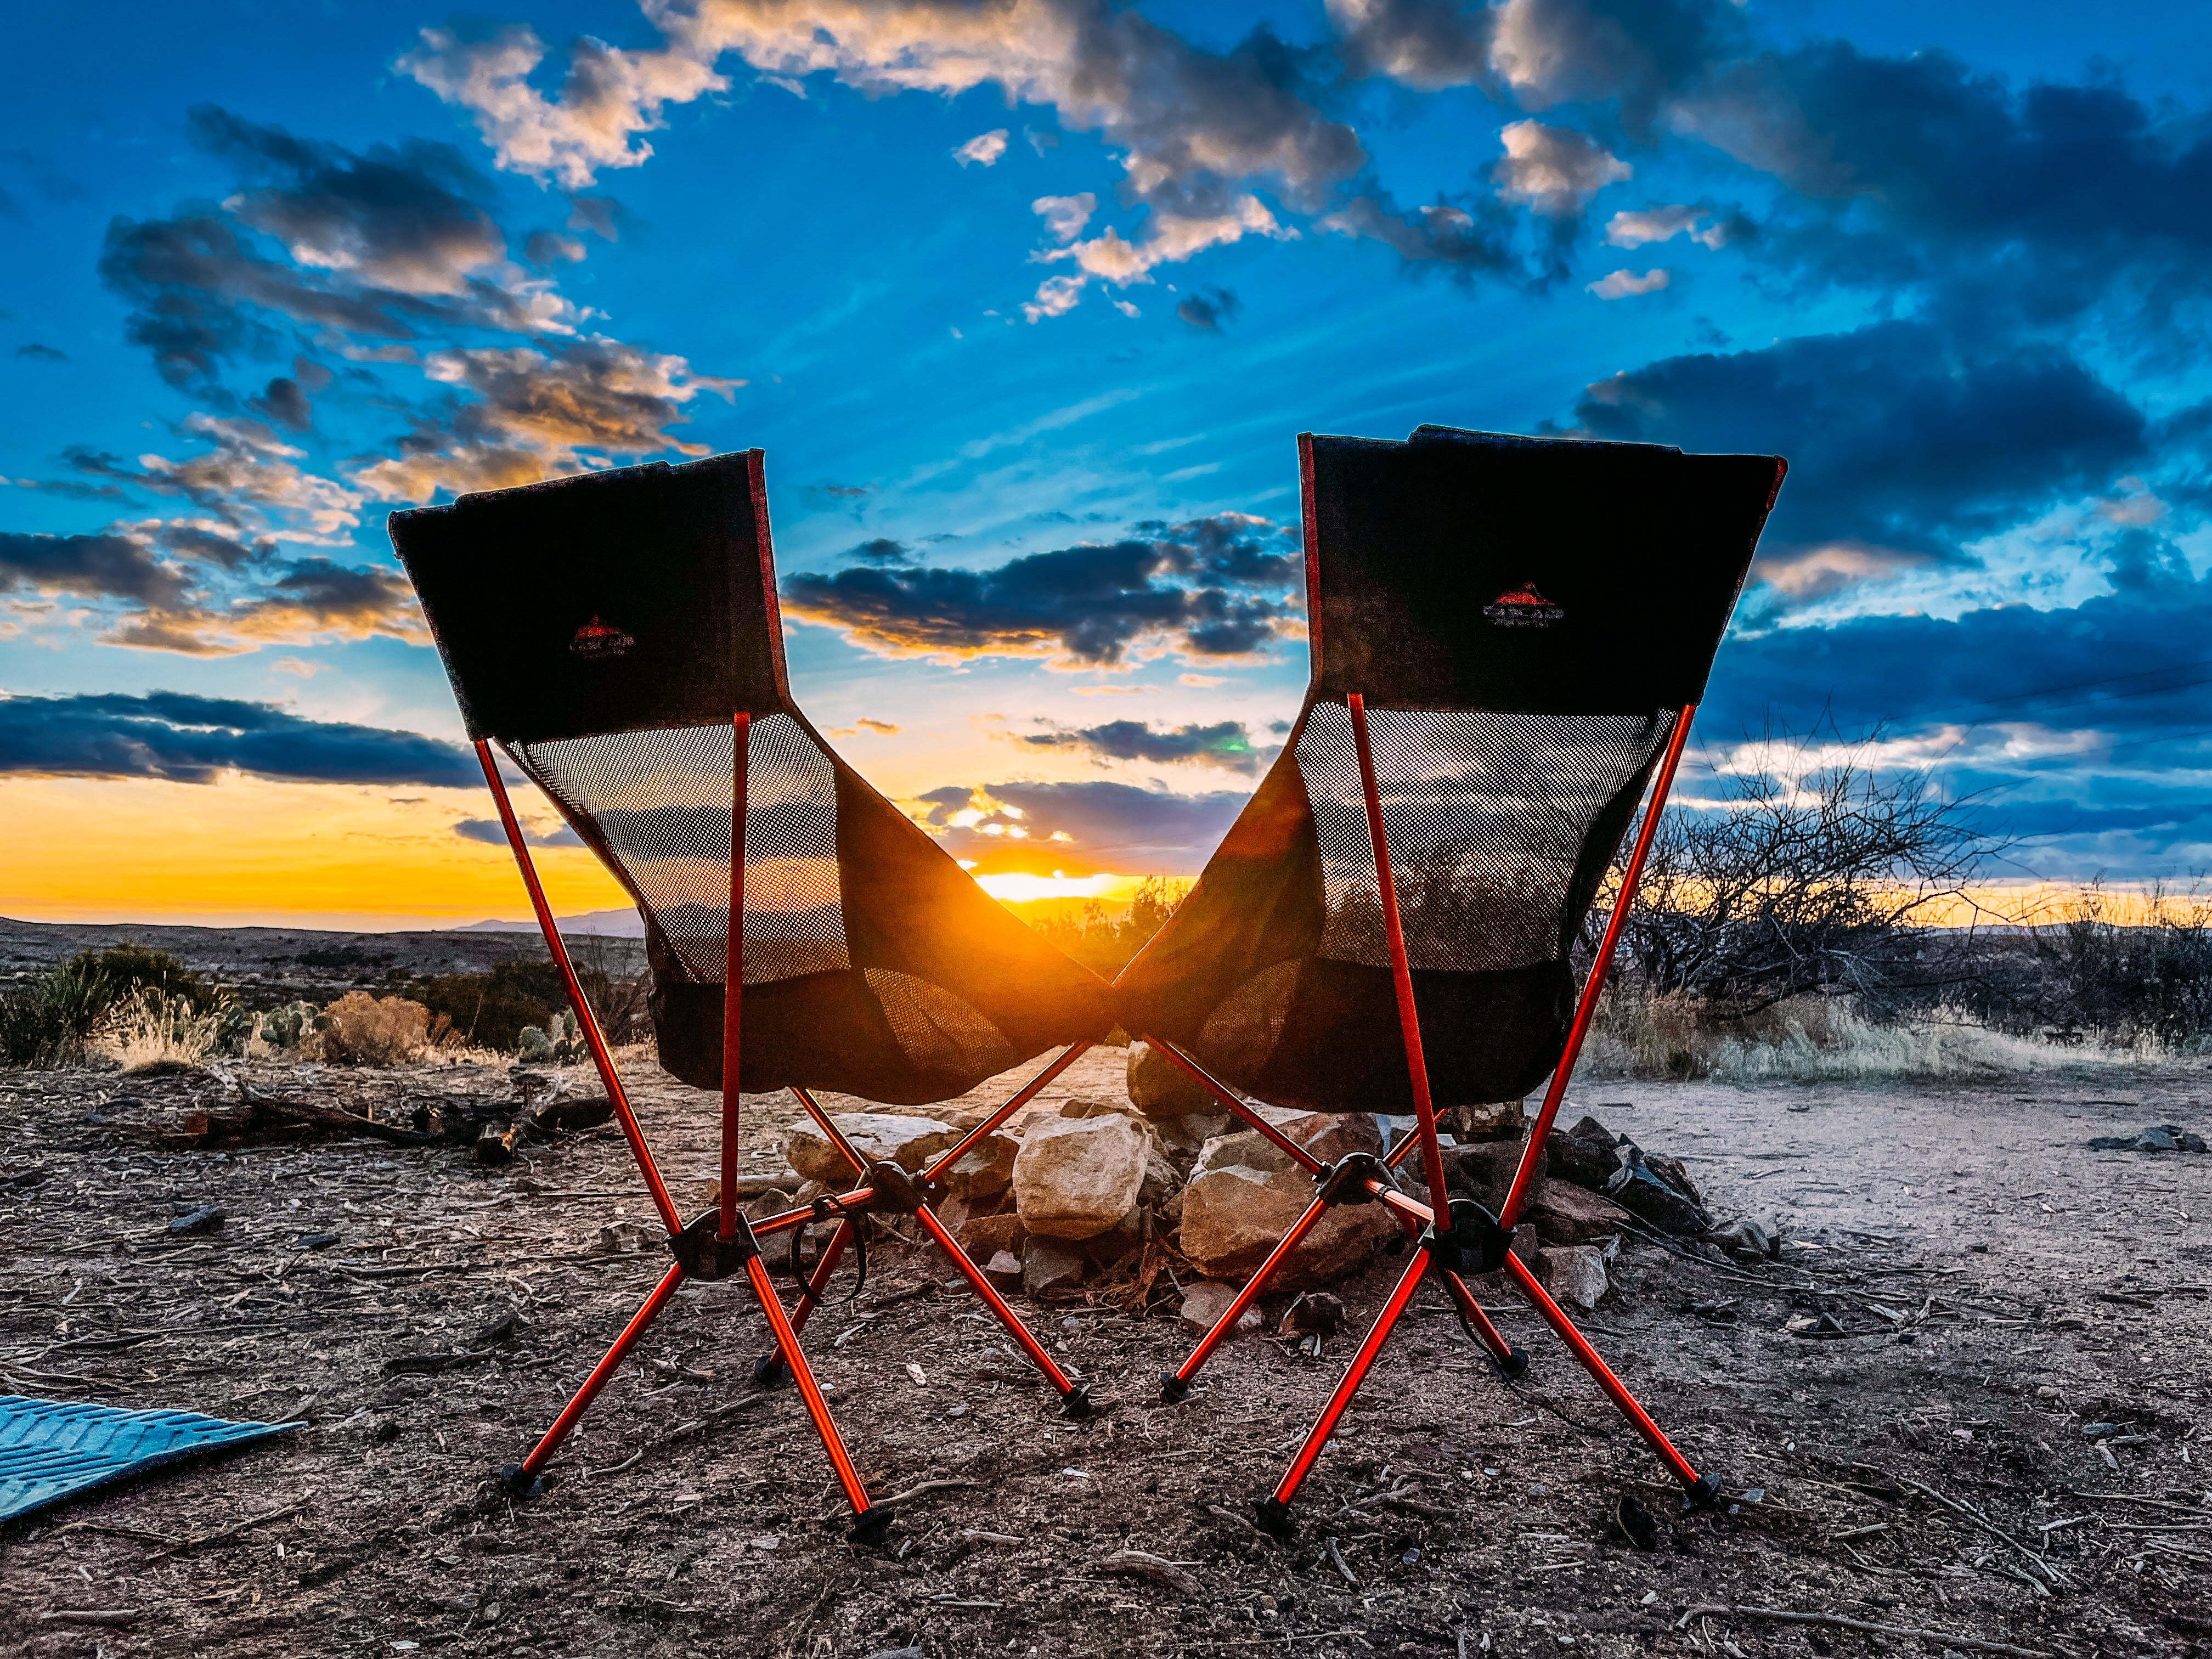 10 Tips for Winter Camping in the Desert - Desert Camping Sunset